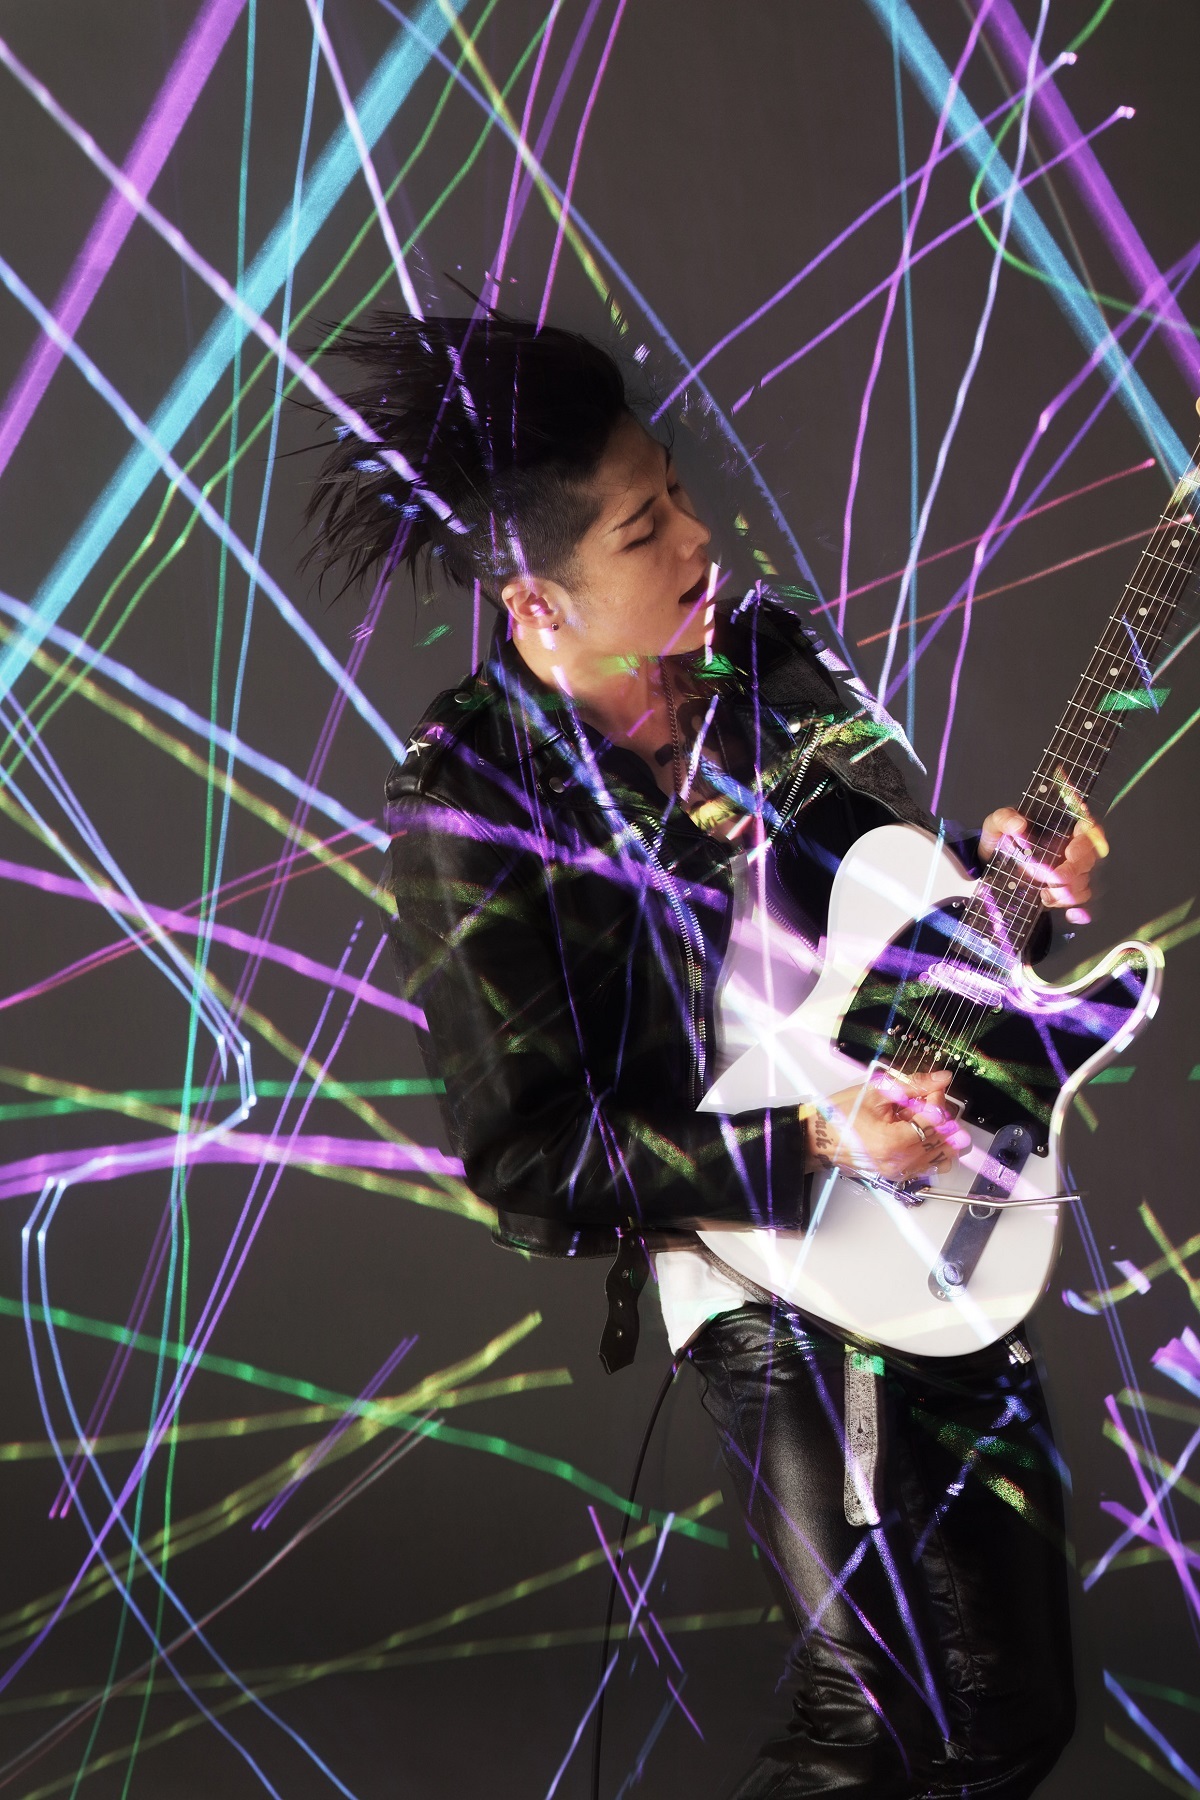 Miyaviのミュージックビデオに出演できるチャンス ダンスコンテストを開催 Spice エンタメ特化型情報メディア スパイス